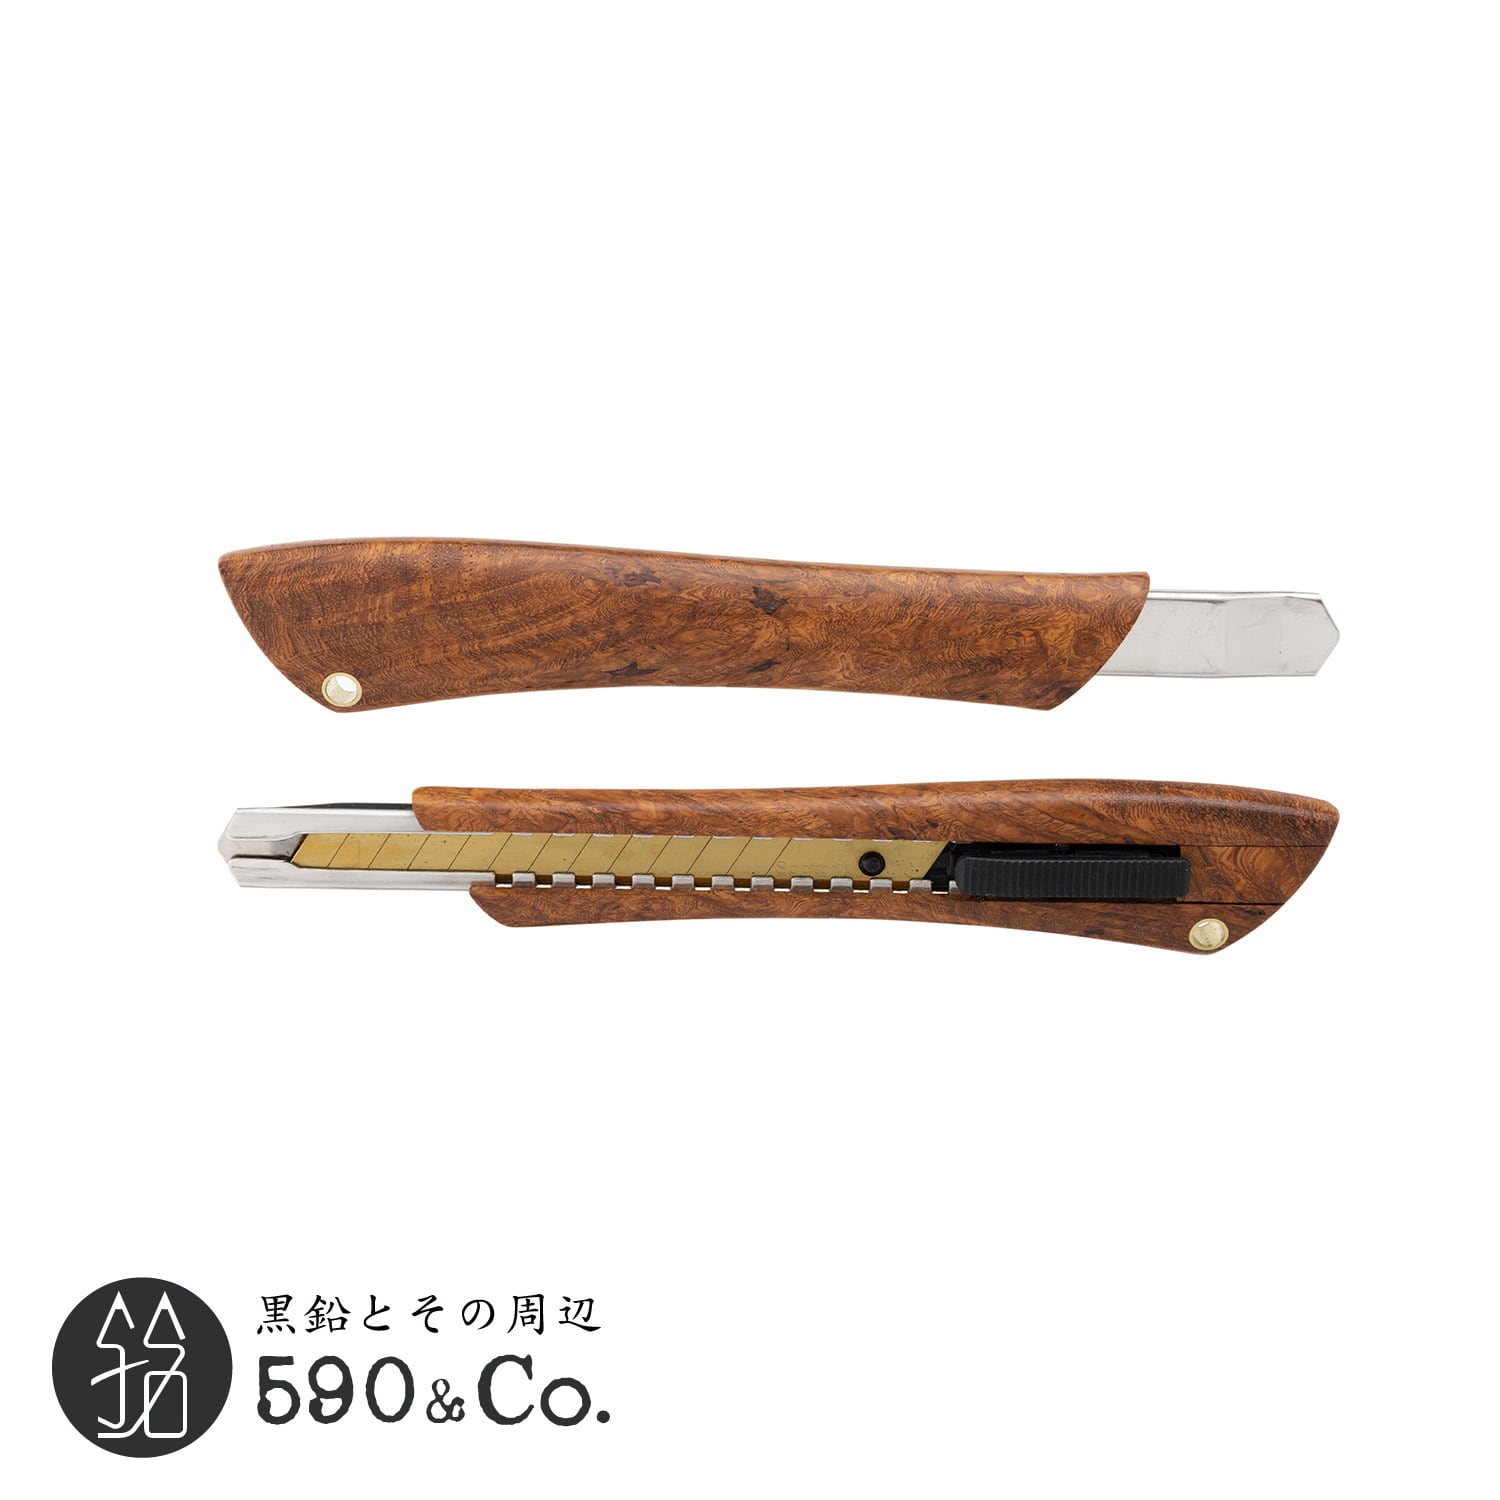 【Flamberg/フランベルク】木製カッターナイフS型 (花梨瘤杢) E 590Co.